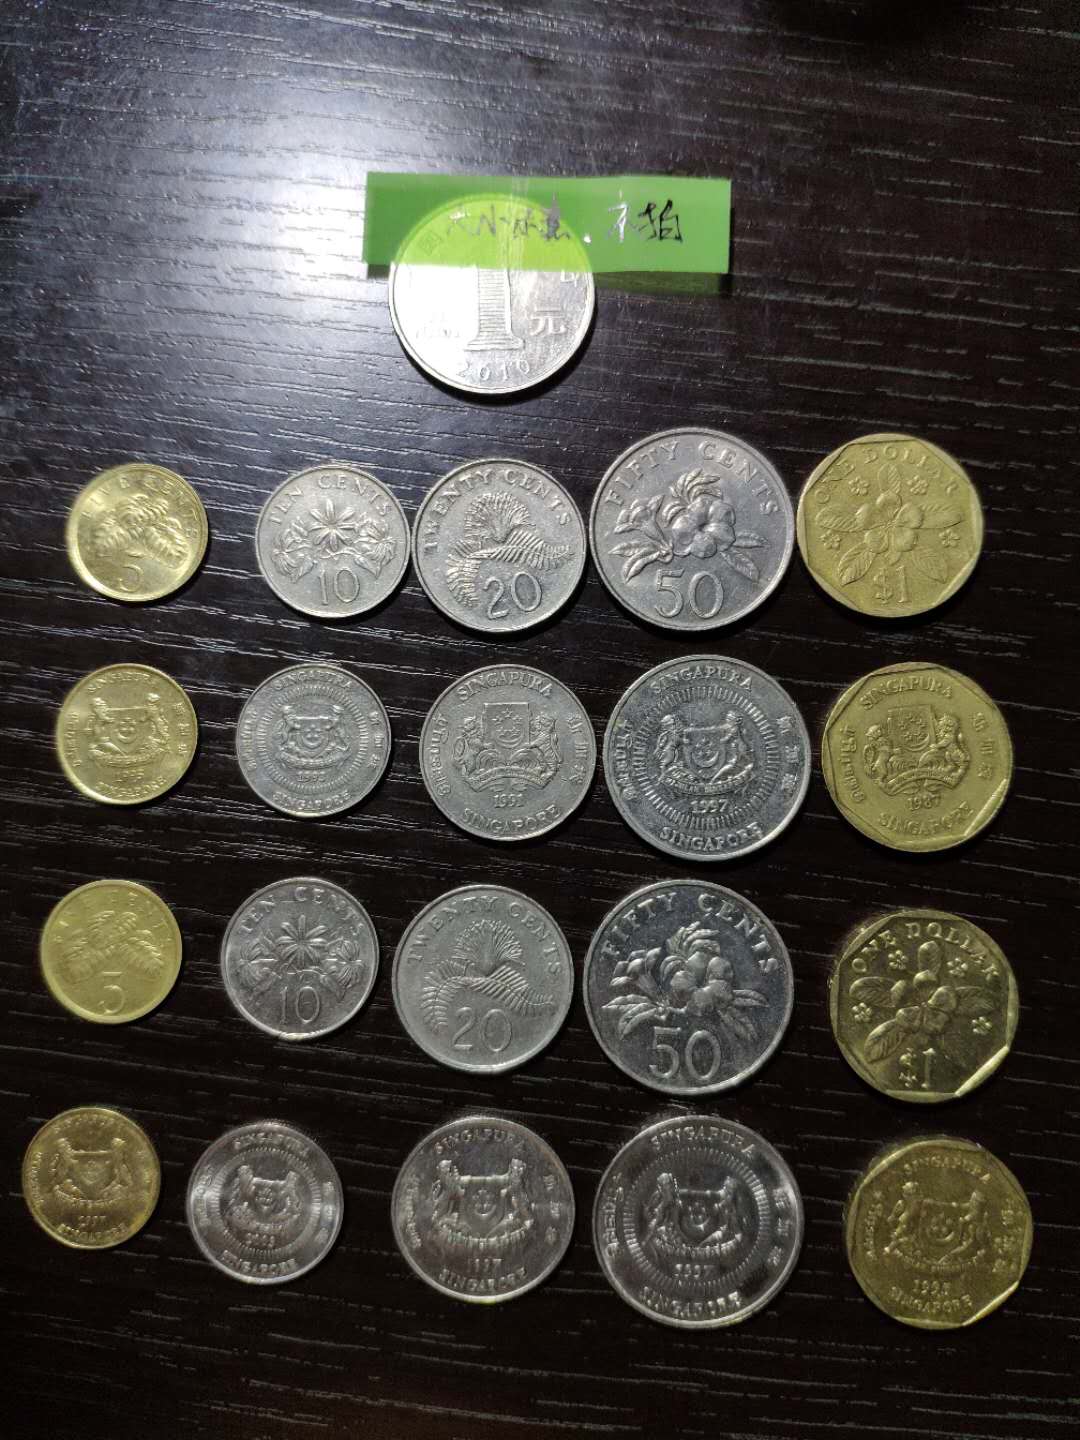 新加坡硬币早期套币5枚套,注意是稀少的早期老版本哦